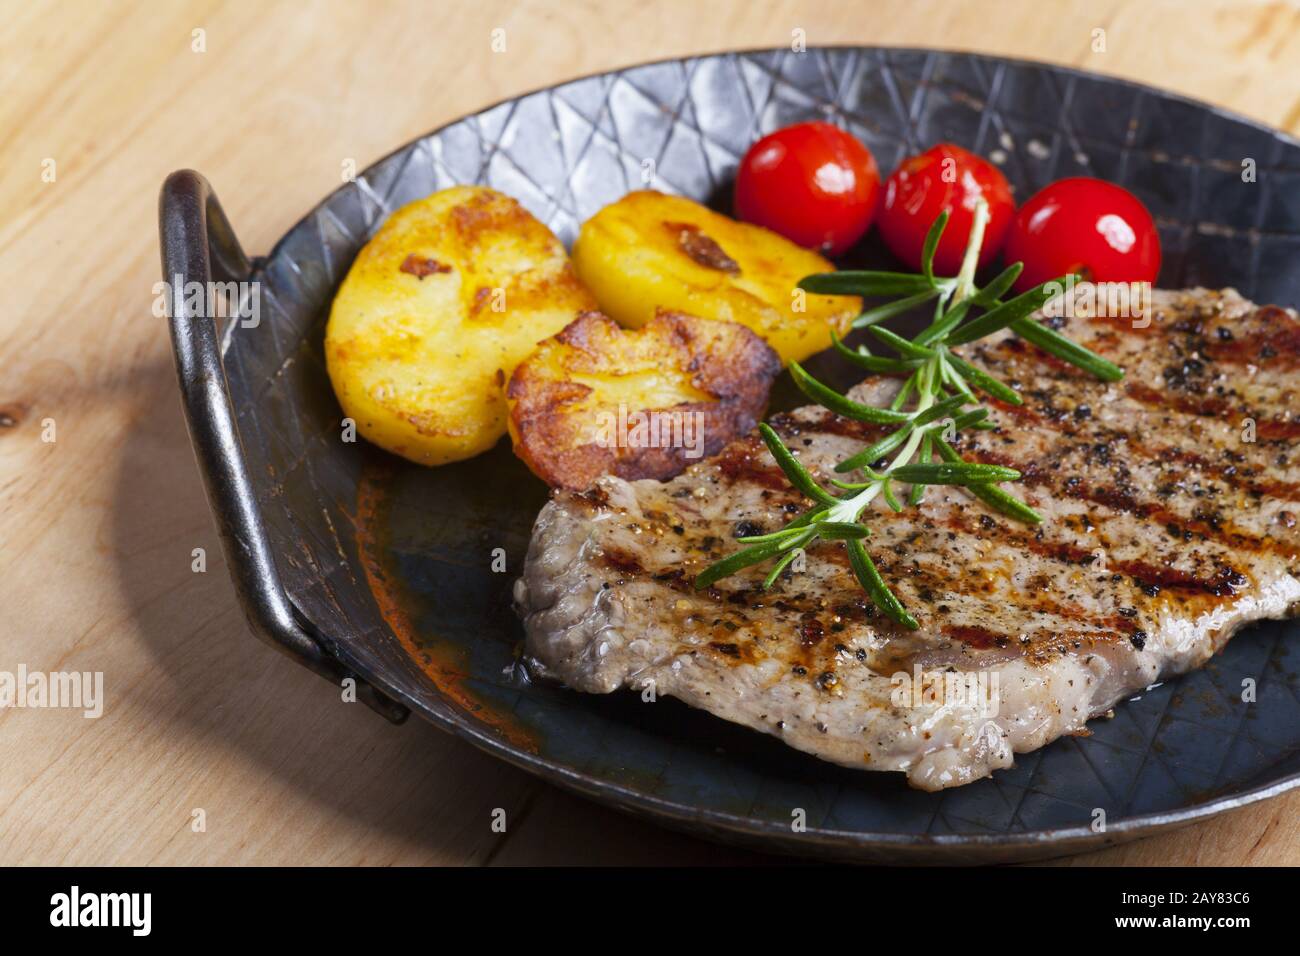 Steak grillé au romarin dans une poêle Banque D'Images